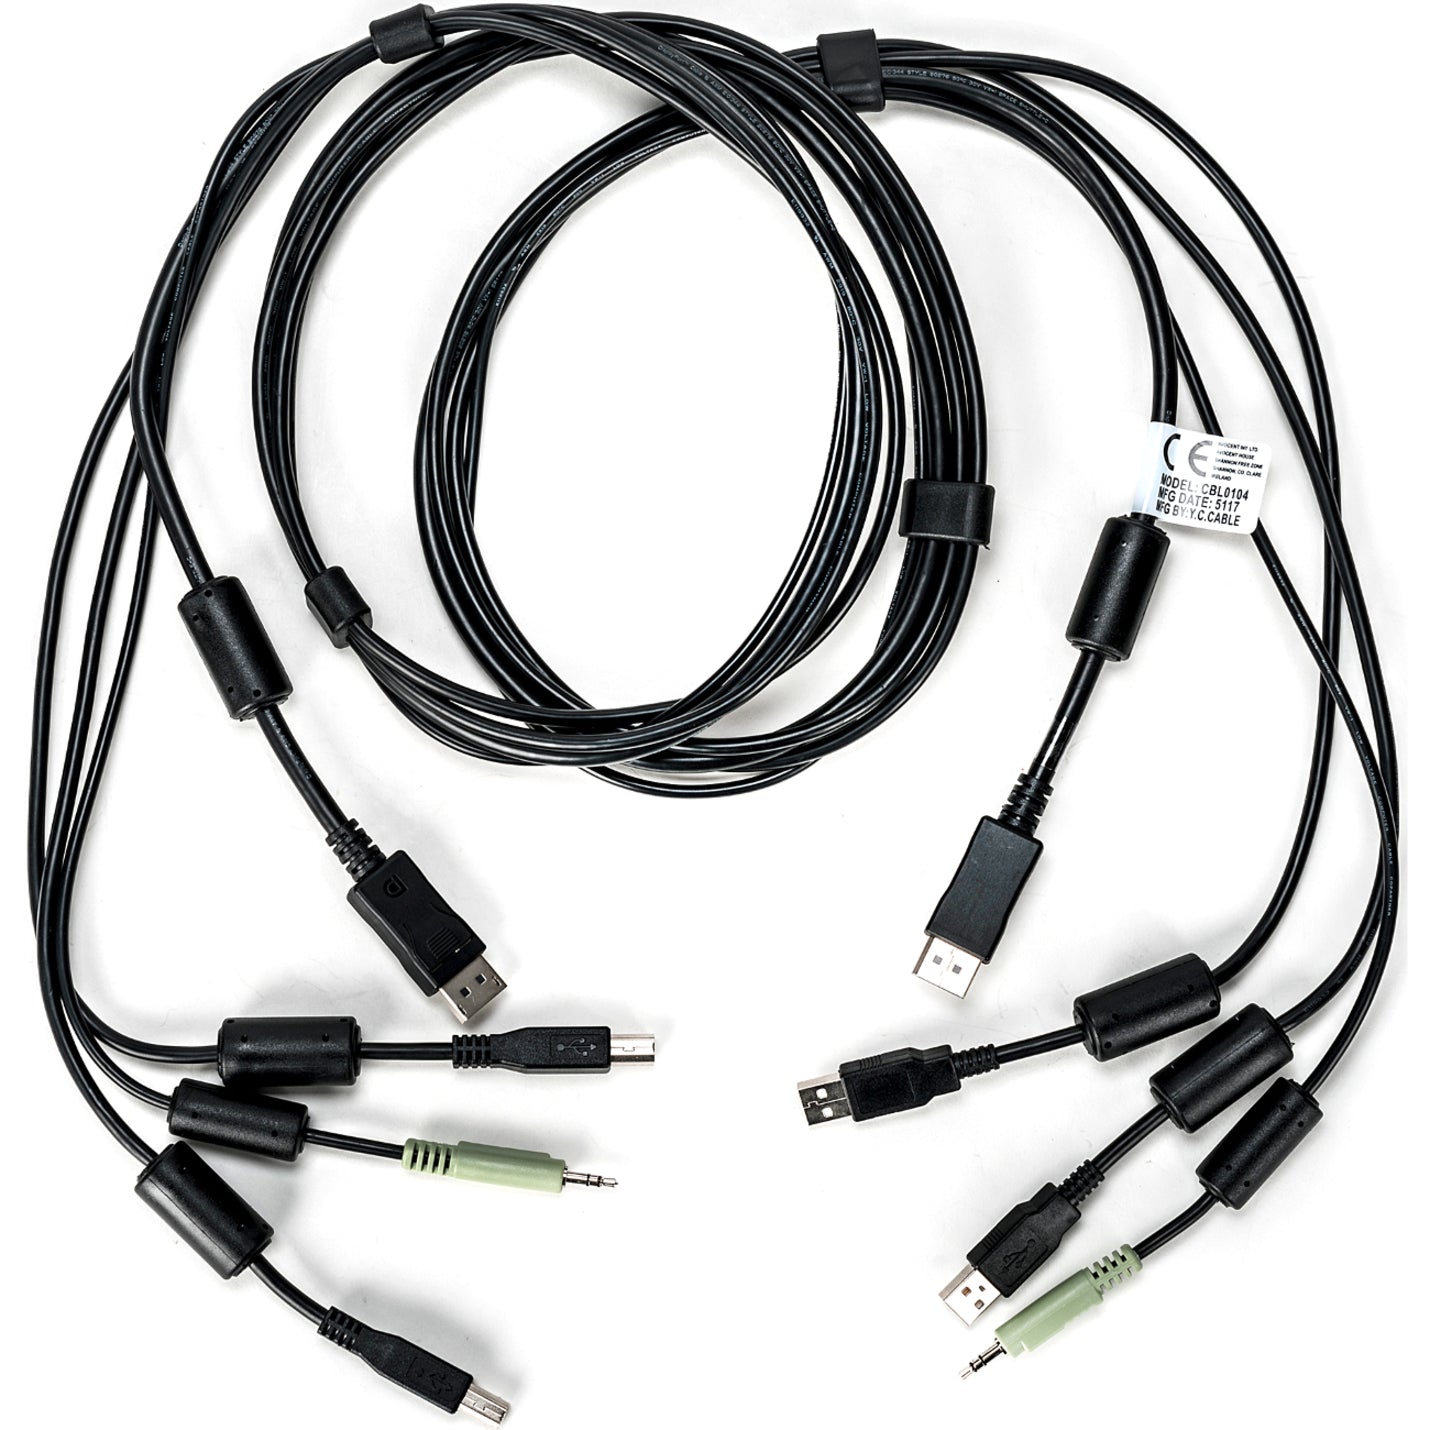 AVOCENT CBL0104 SC845D Kabel - 6ft USB-Tastatur und Maus DisplayPort und Audiokabel